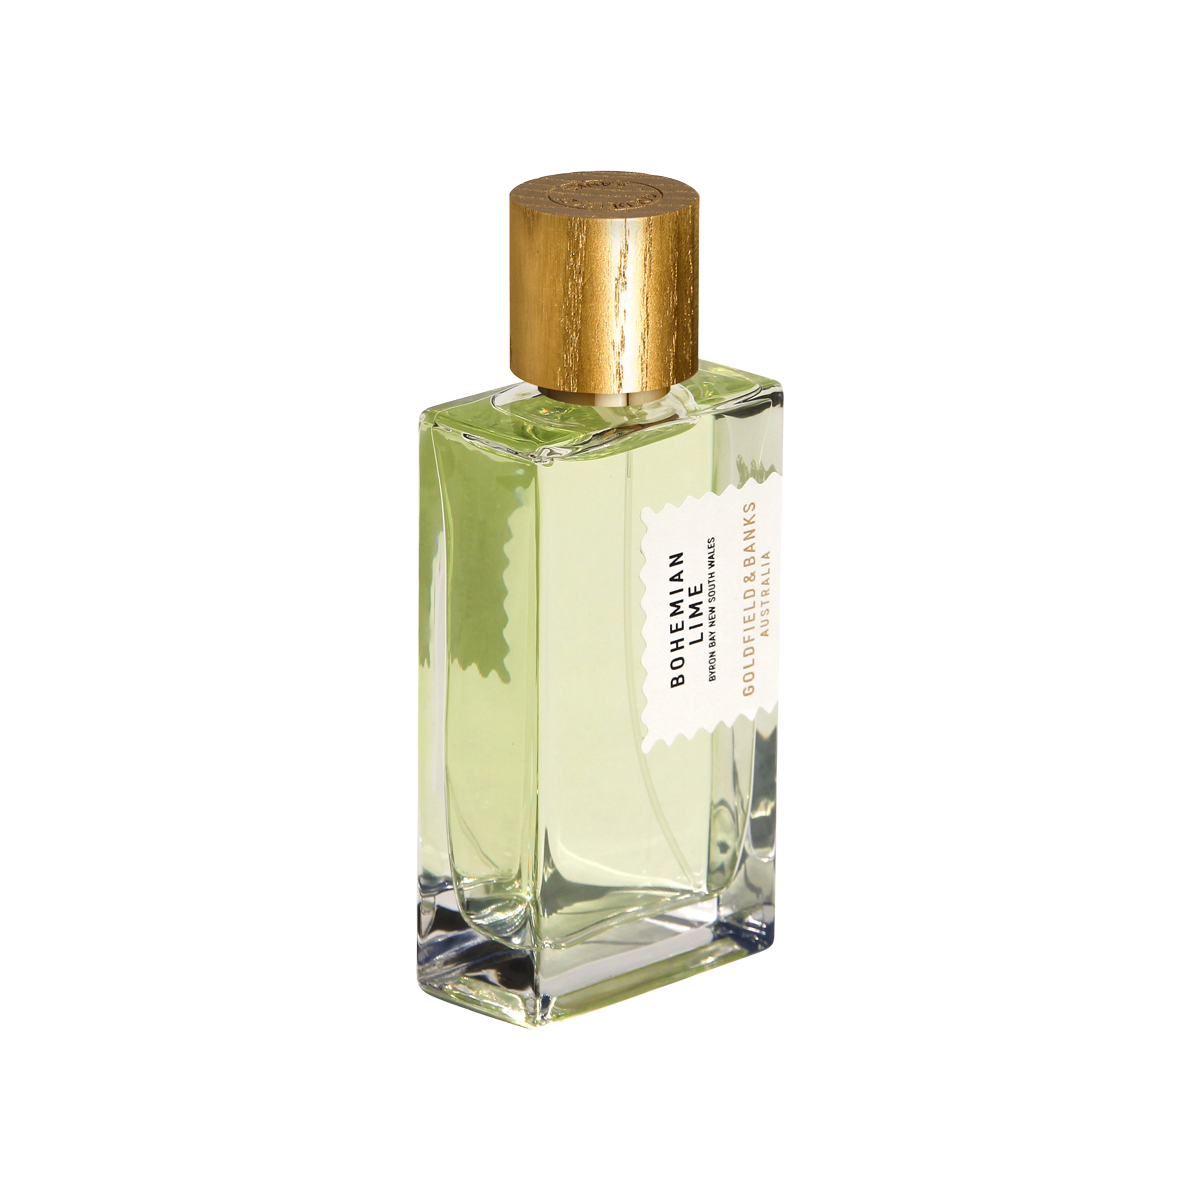 Goldfield & Banks - Bohemian Lime Eau de Parfum